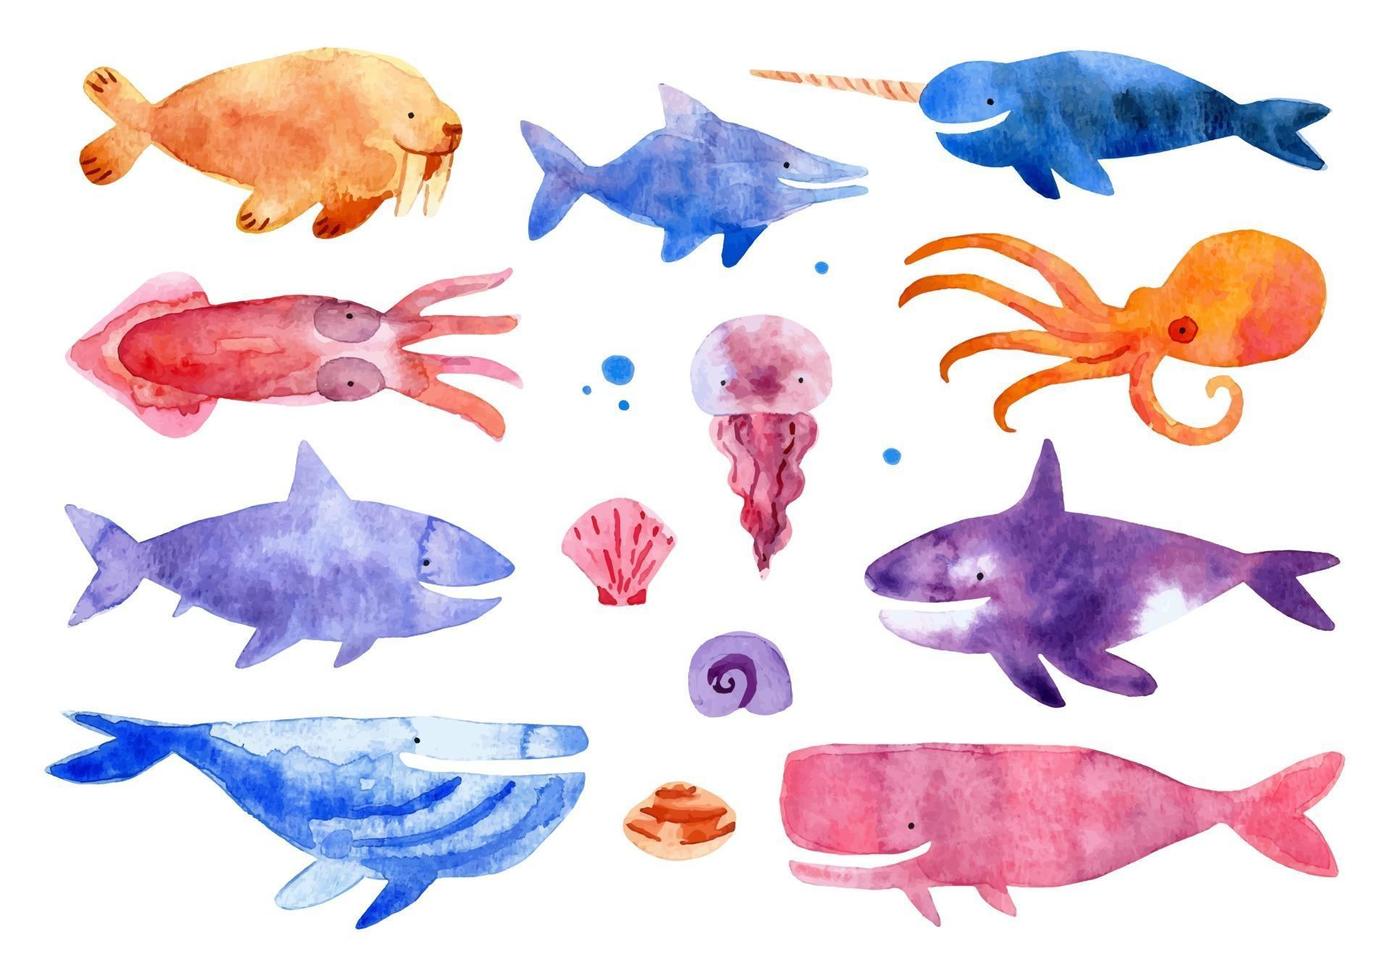 Sea creatures in watercolor style vector